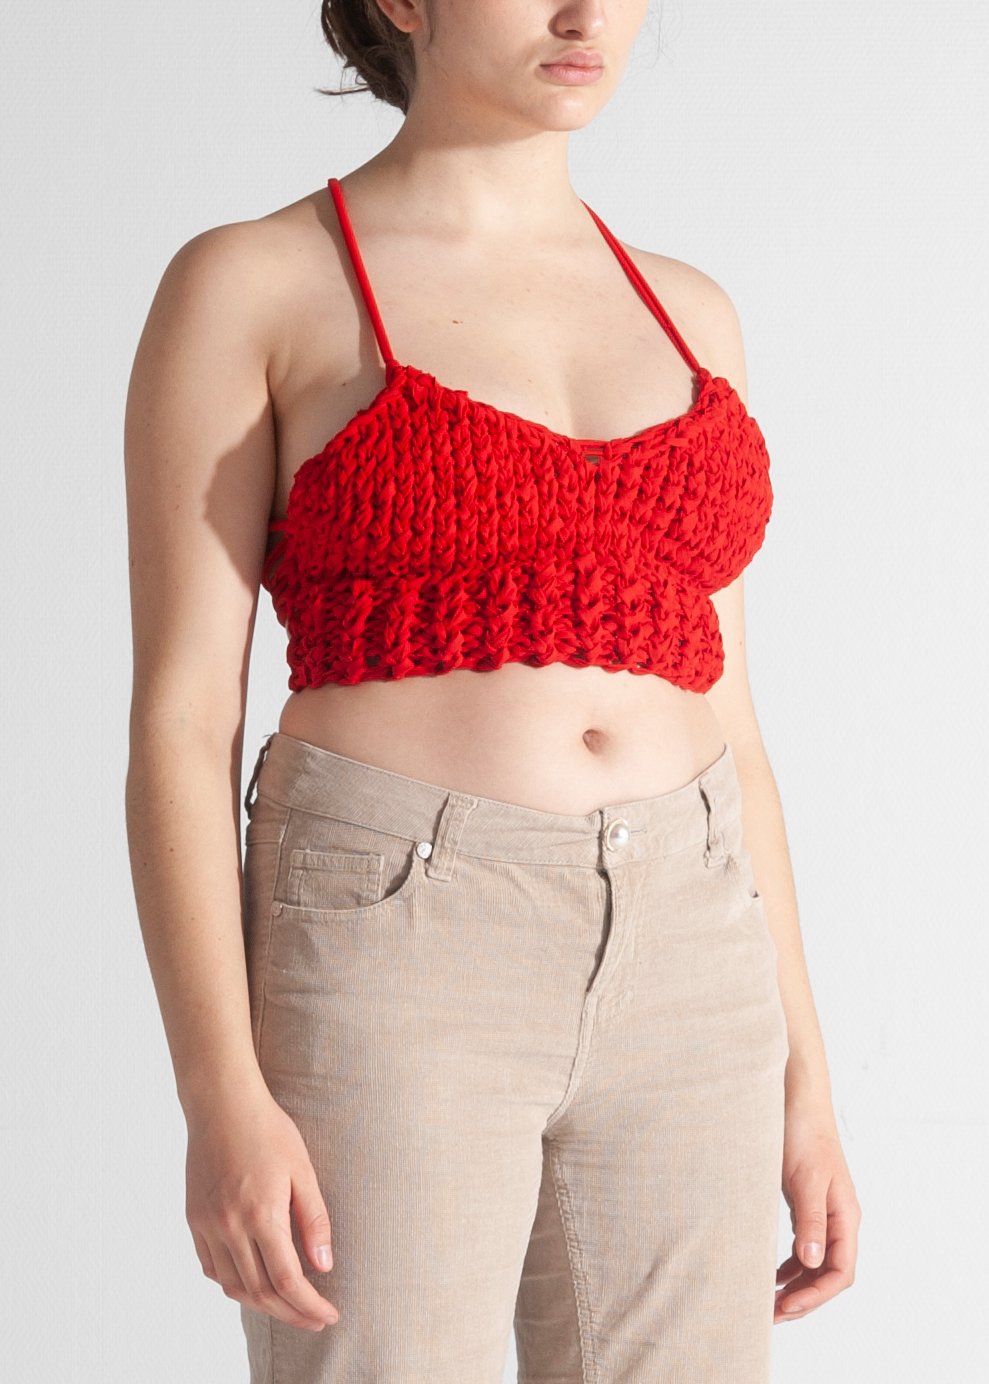 Anouk 90s knit top tricoté été collectif GAMUT rouge